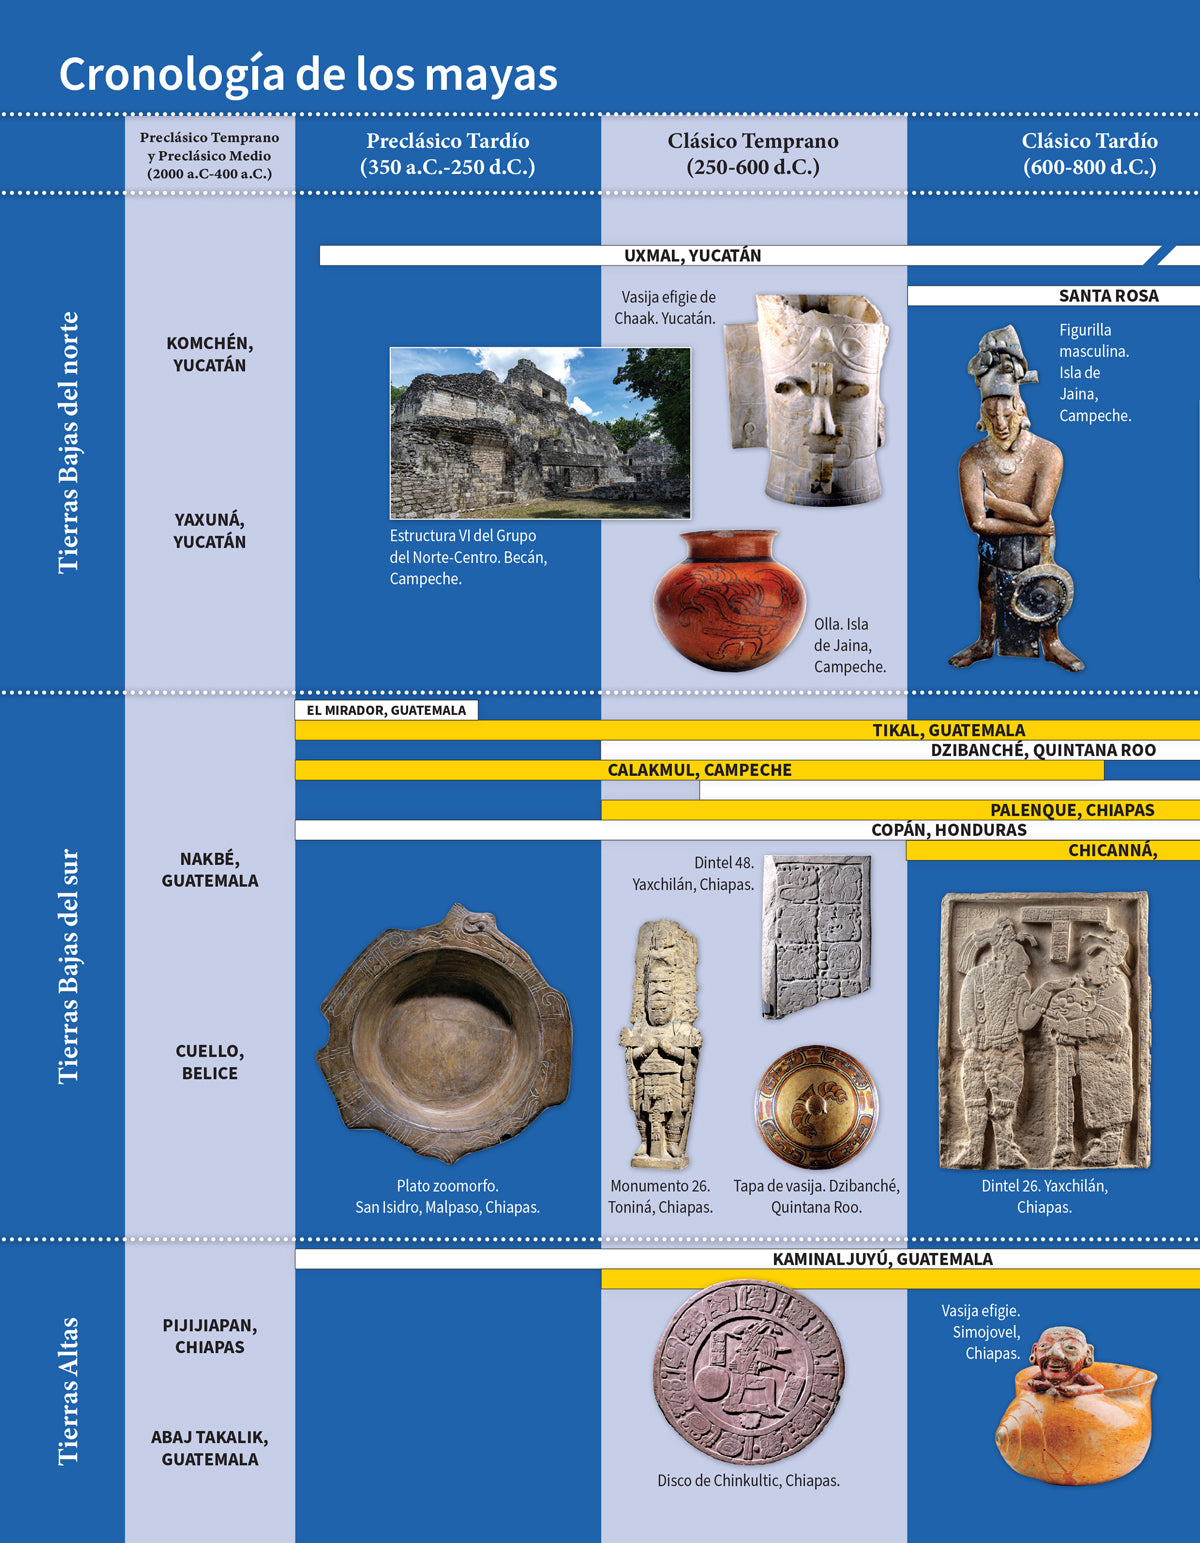 Arqueología del mundo maya. Una época en imágenes.